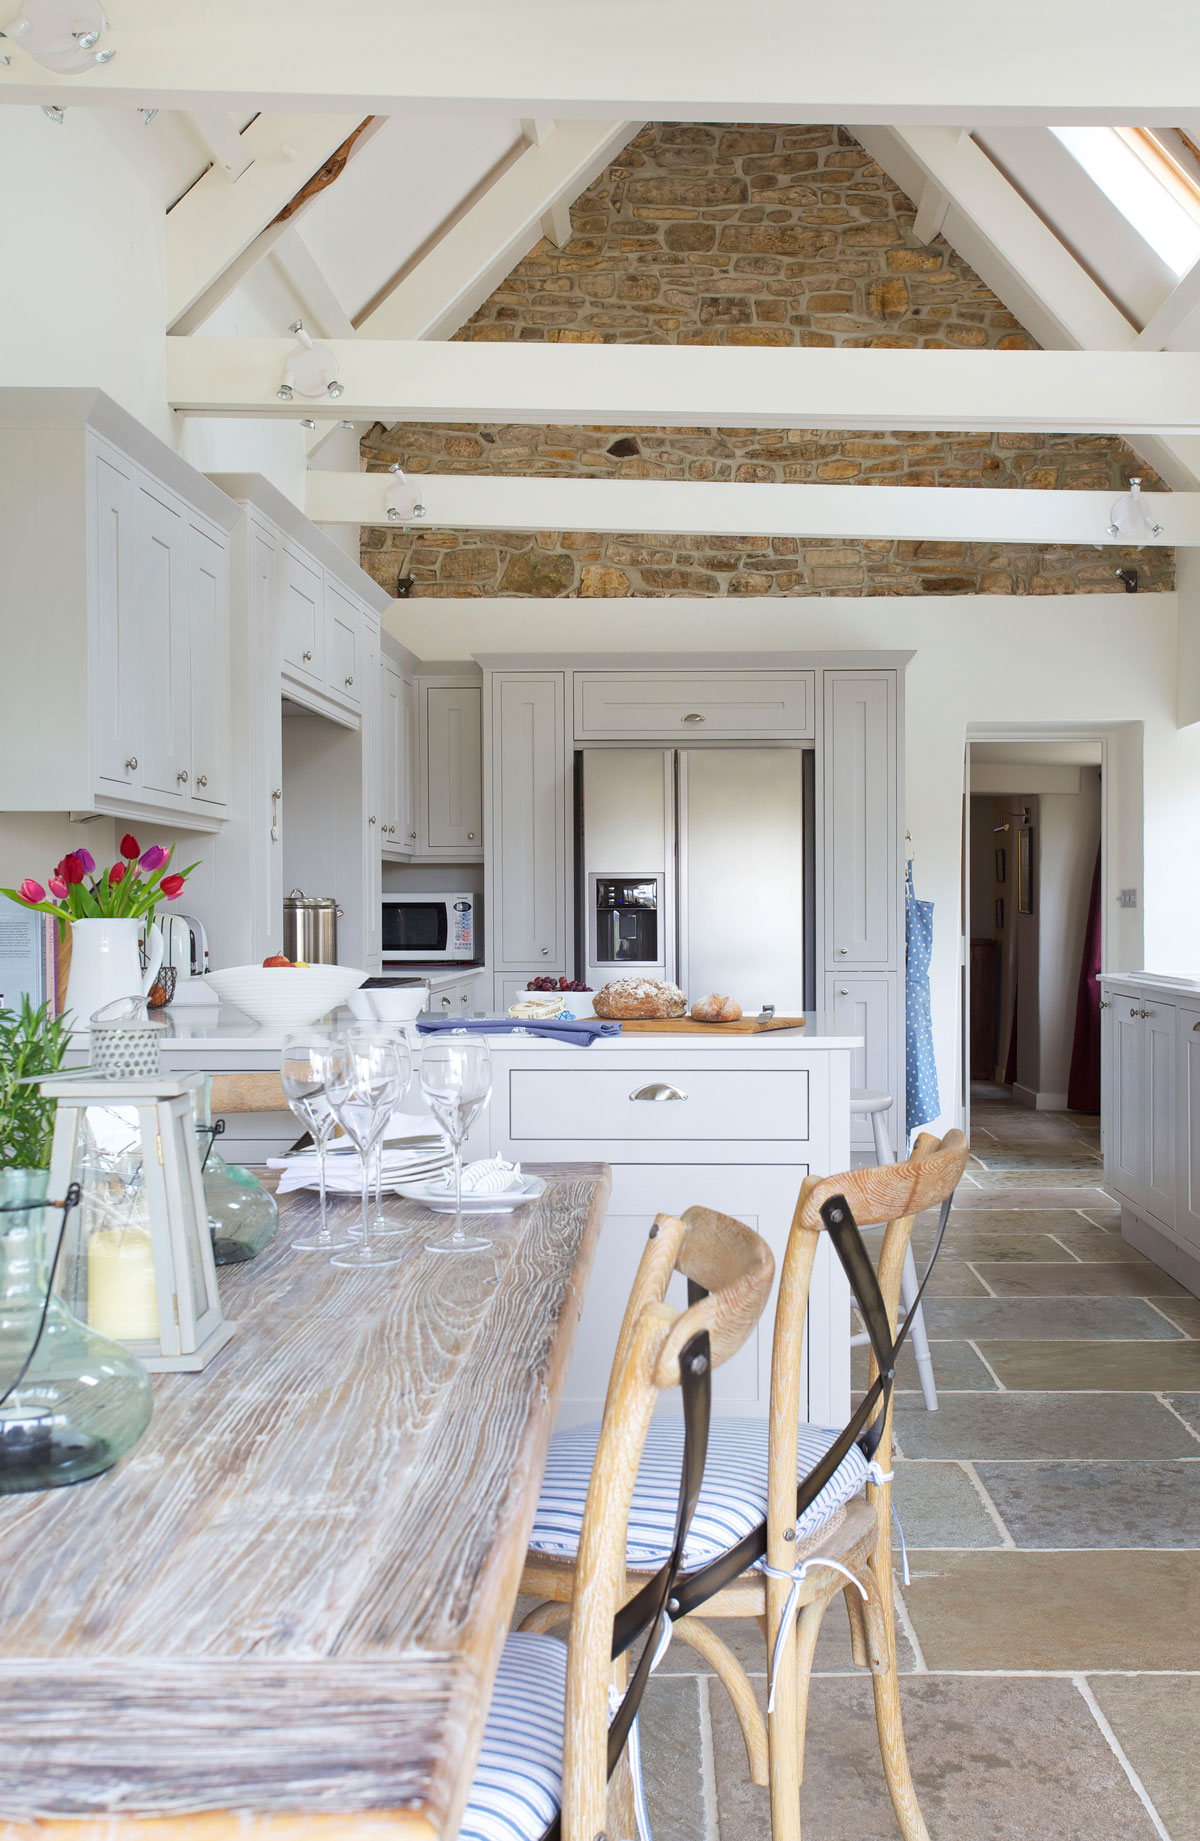 škandinávska vidiecka kuchyňa s bielou kuchynskou linkou do tvaru písmena U, pred polostrovom je drevený stôl s drevenými stoličkami, na strope sú priznané trámy a kameň